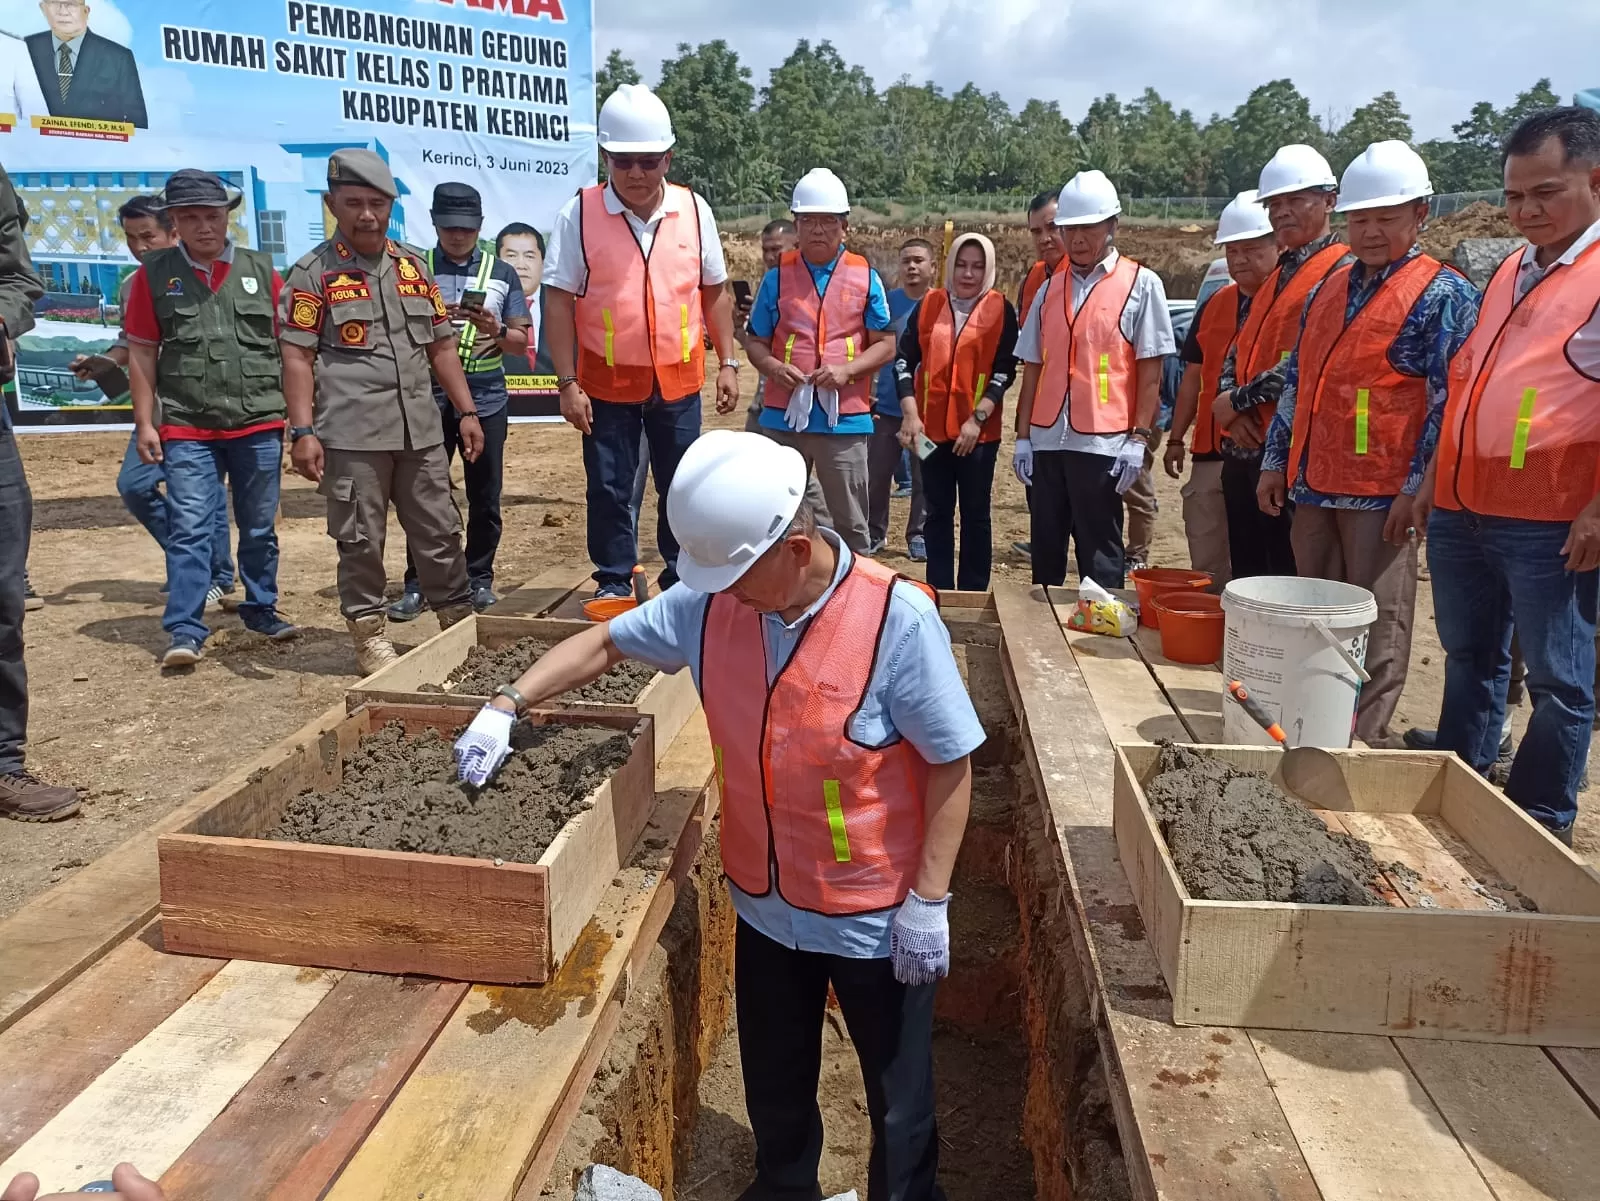 Bupati Kerinci Adirozal melakukan peletakan batu pertama pembangunan rumah sakit di Bukit Kerman (Metrojambi.com/Dedi Aguspriadi)